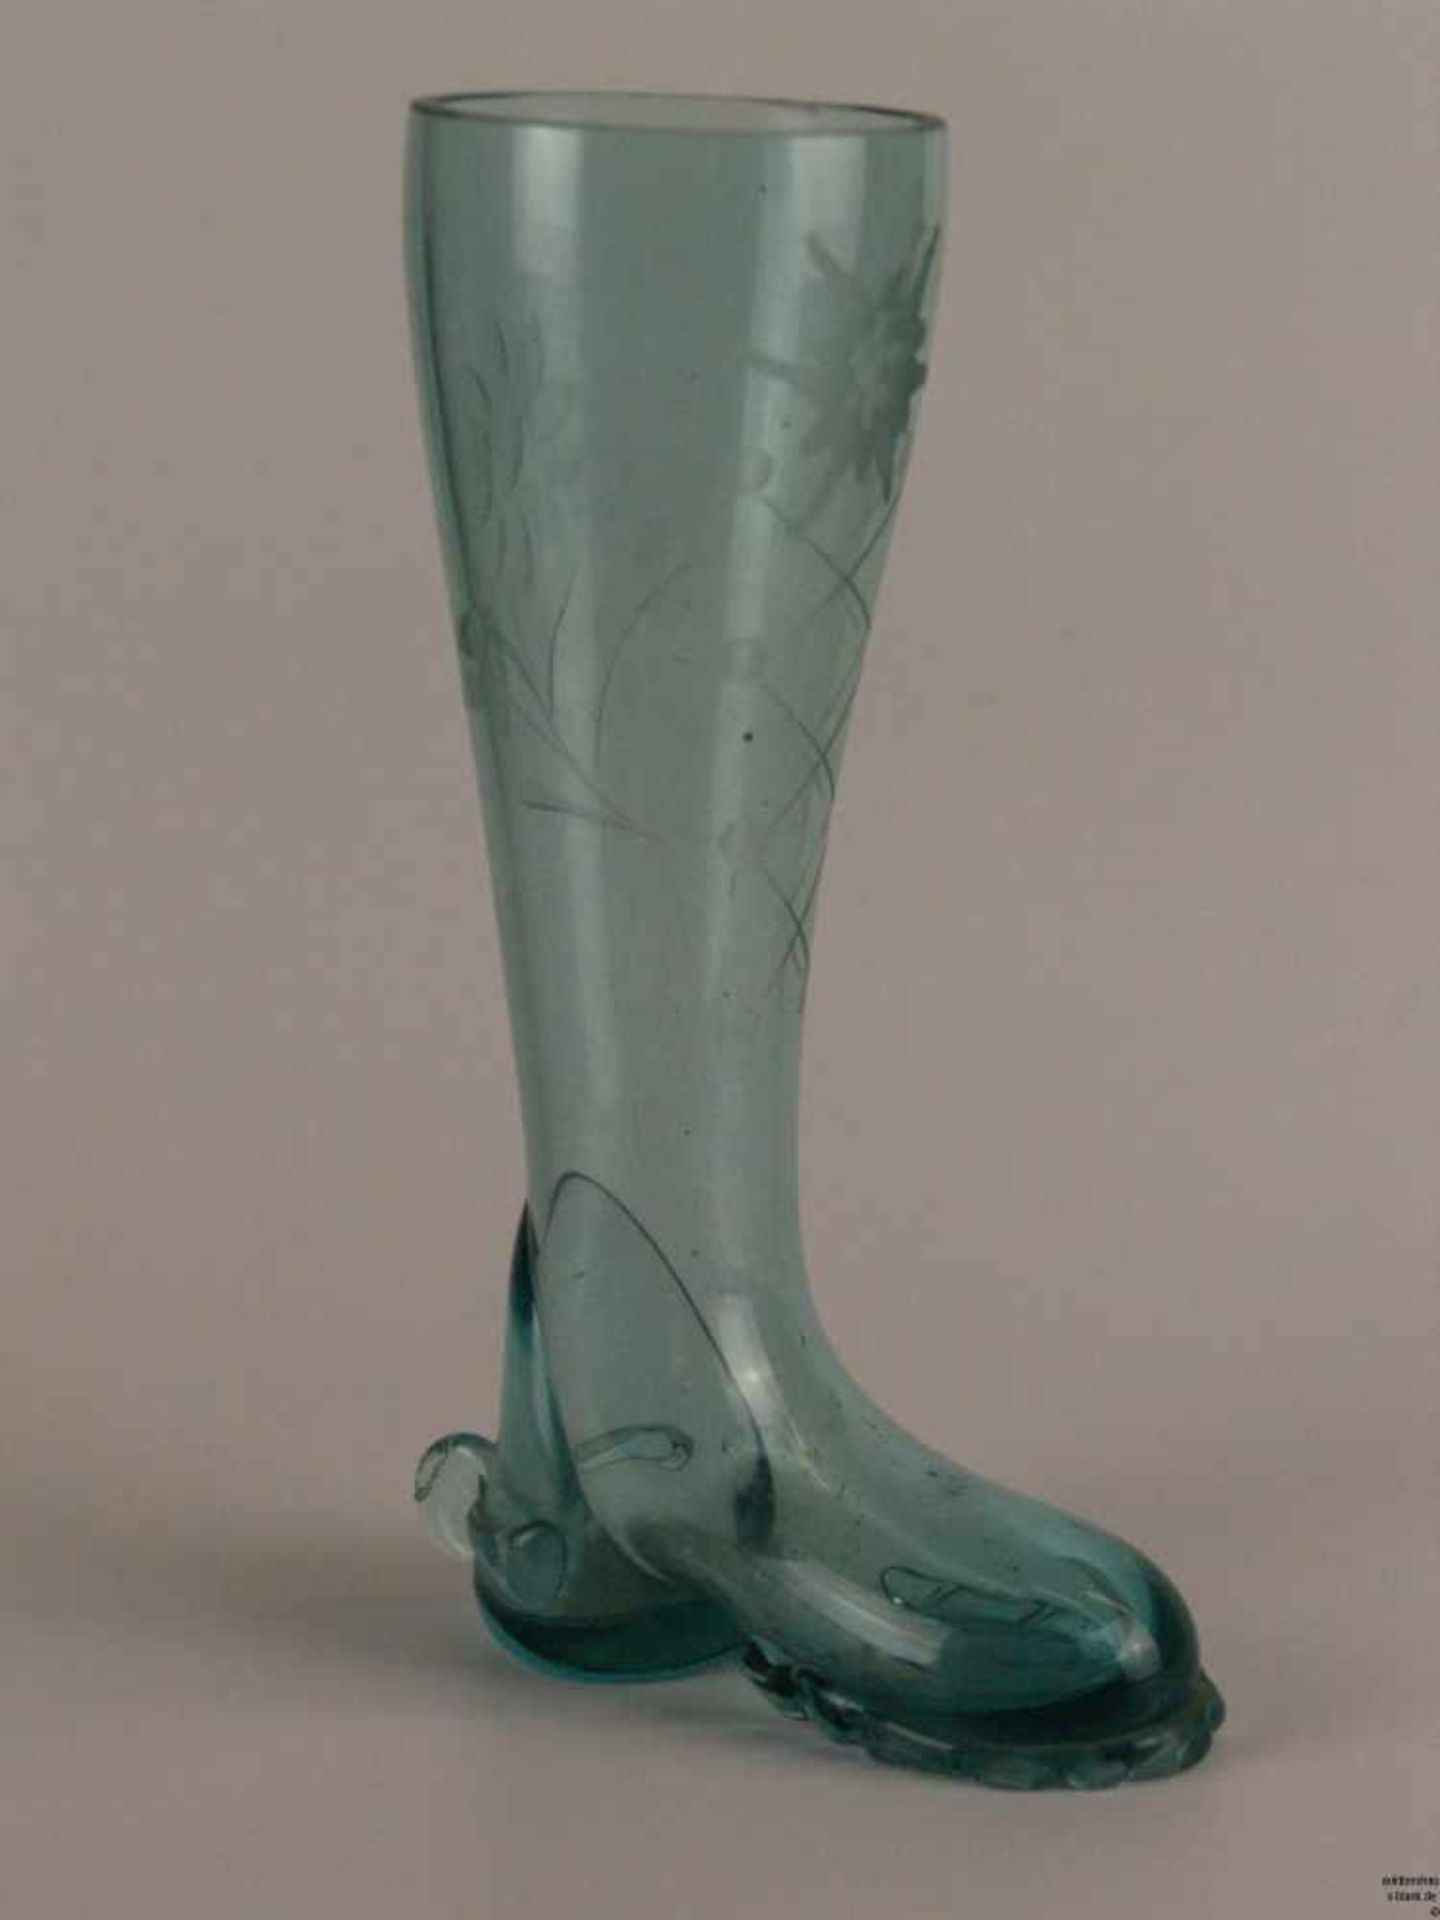 Bierstiefel - aquamarin farbiges Glas, Stiefelform, mit floralem Schliffdekor, Gebrauchsspuren, H.